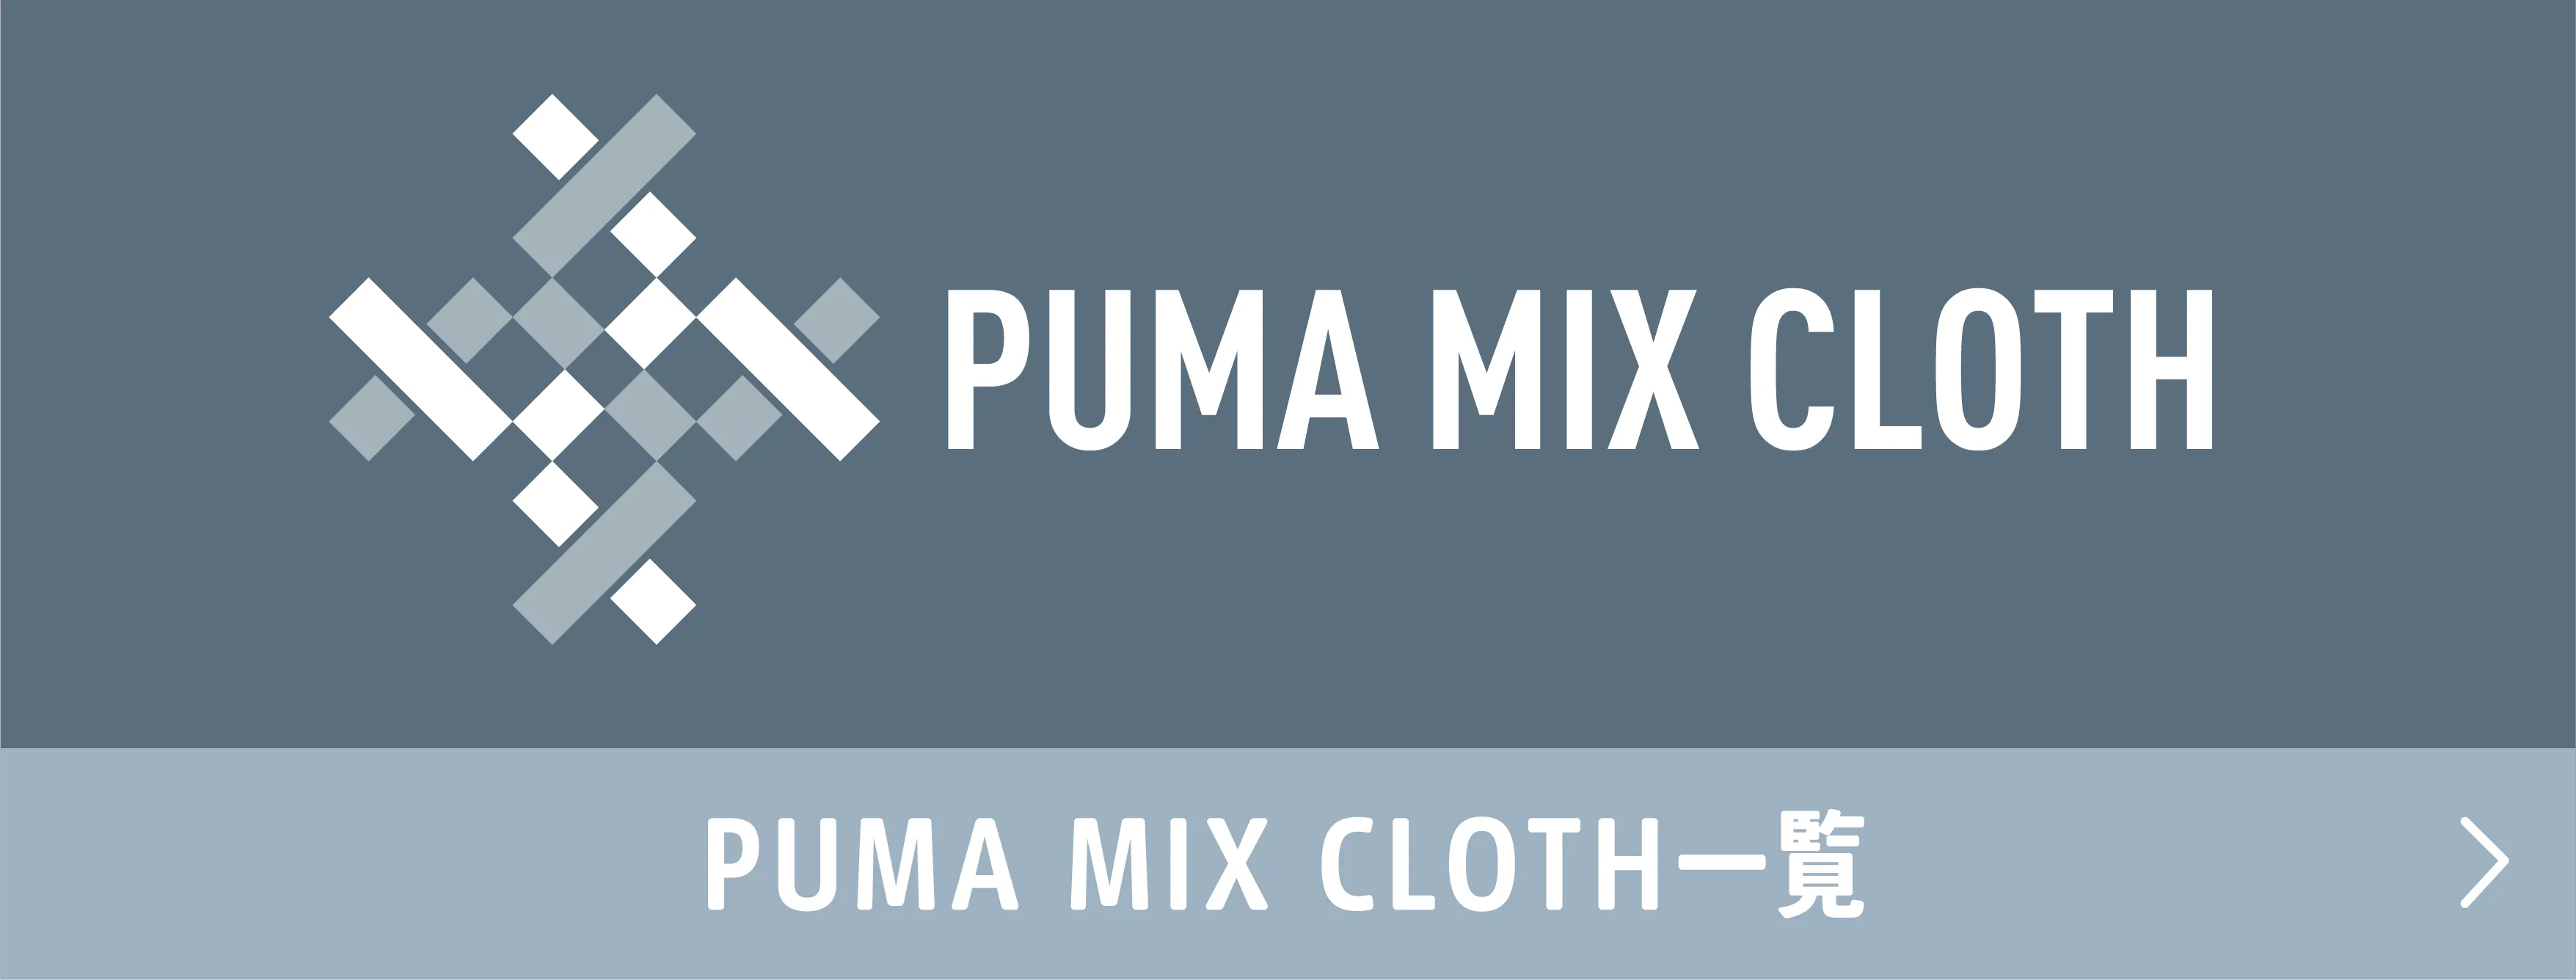 PUMA MIX CLOTH